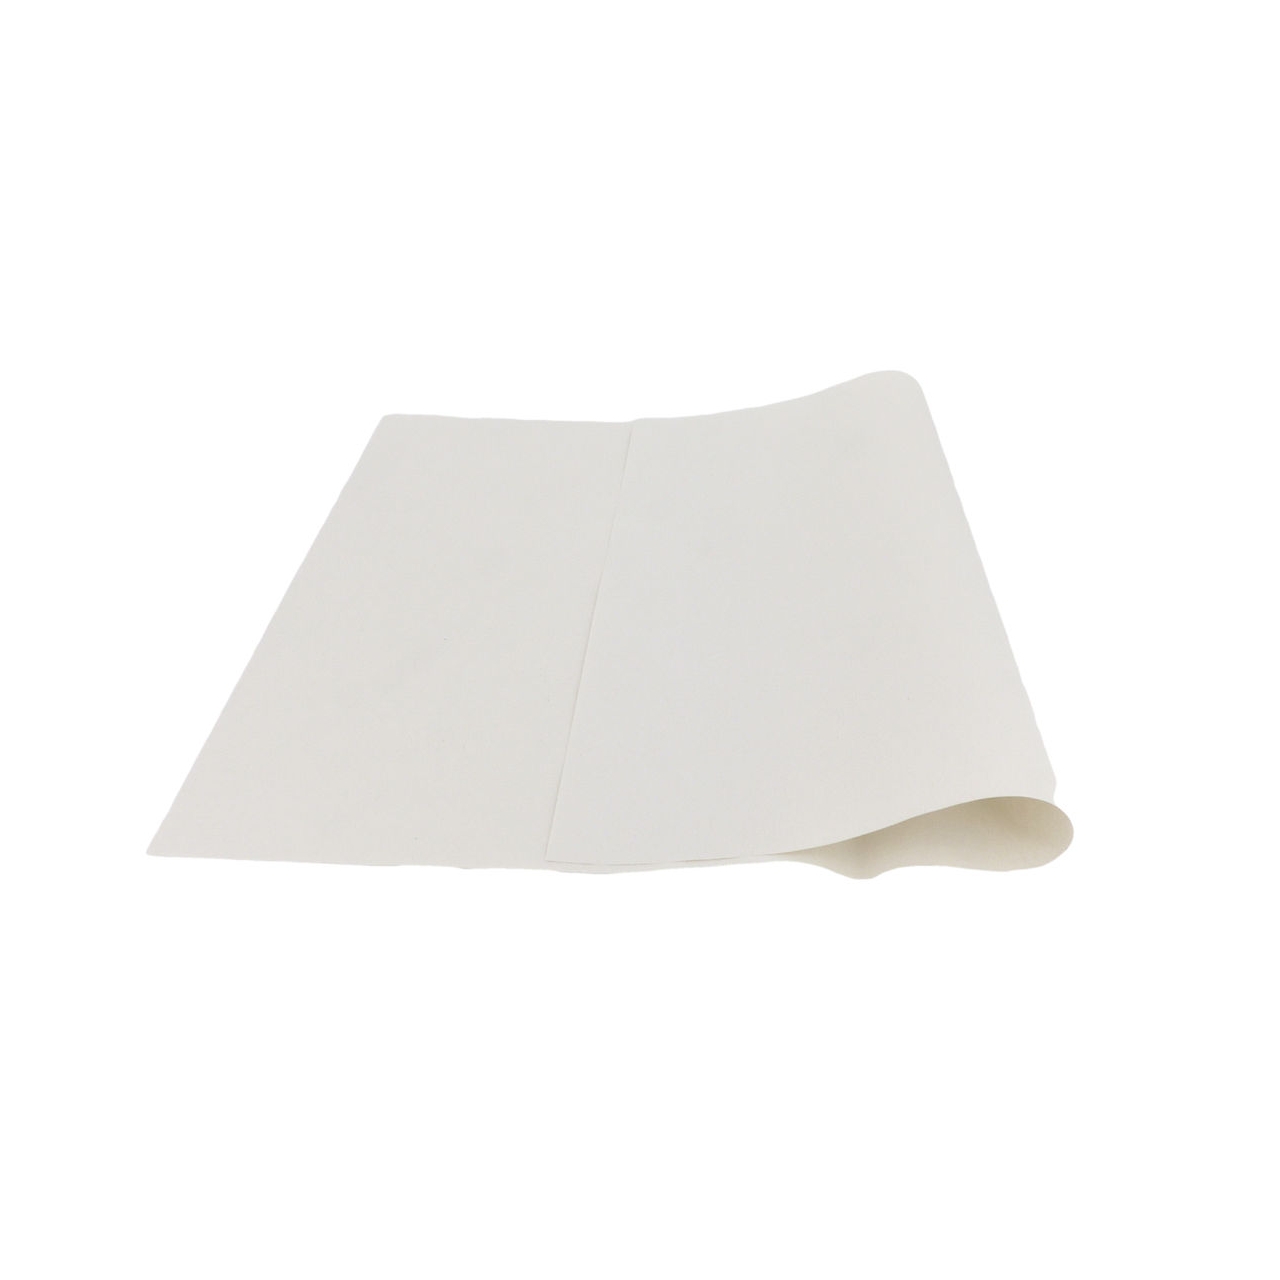 Einschlagpapier 1/8 Bg. 37,5 x 25 cm, weiß, 40 g/qm, 10-kg-Pack